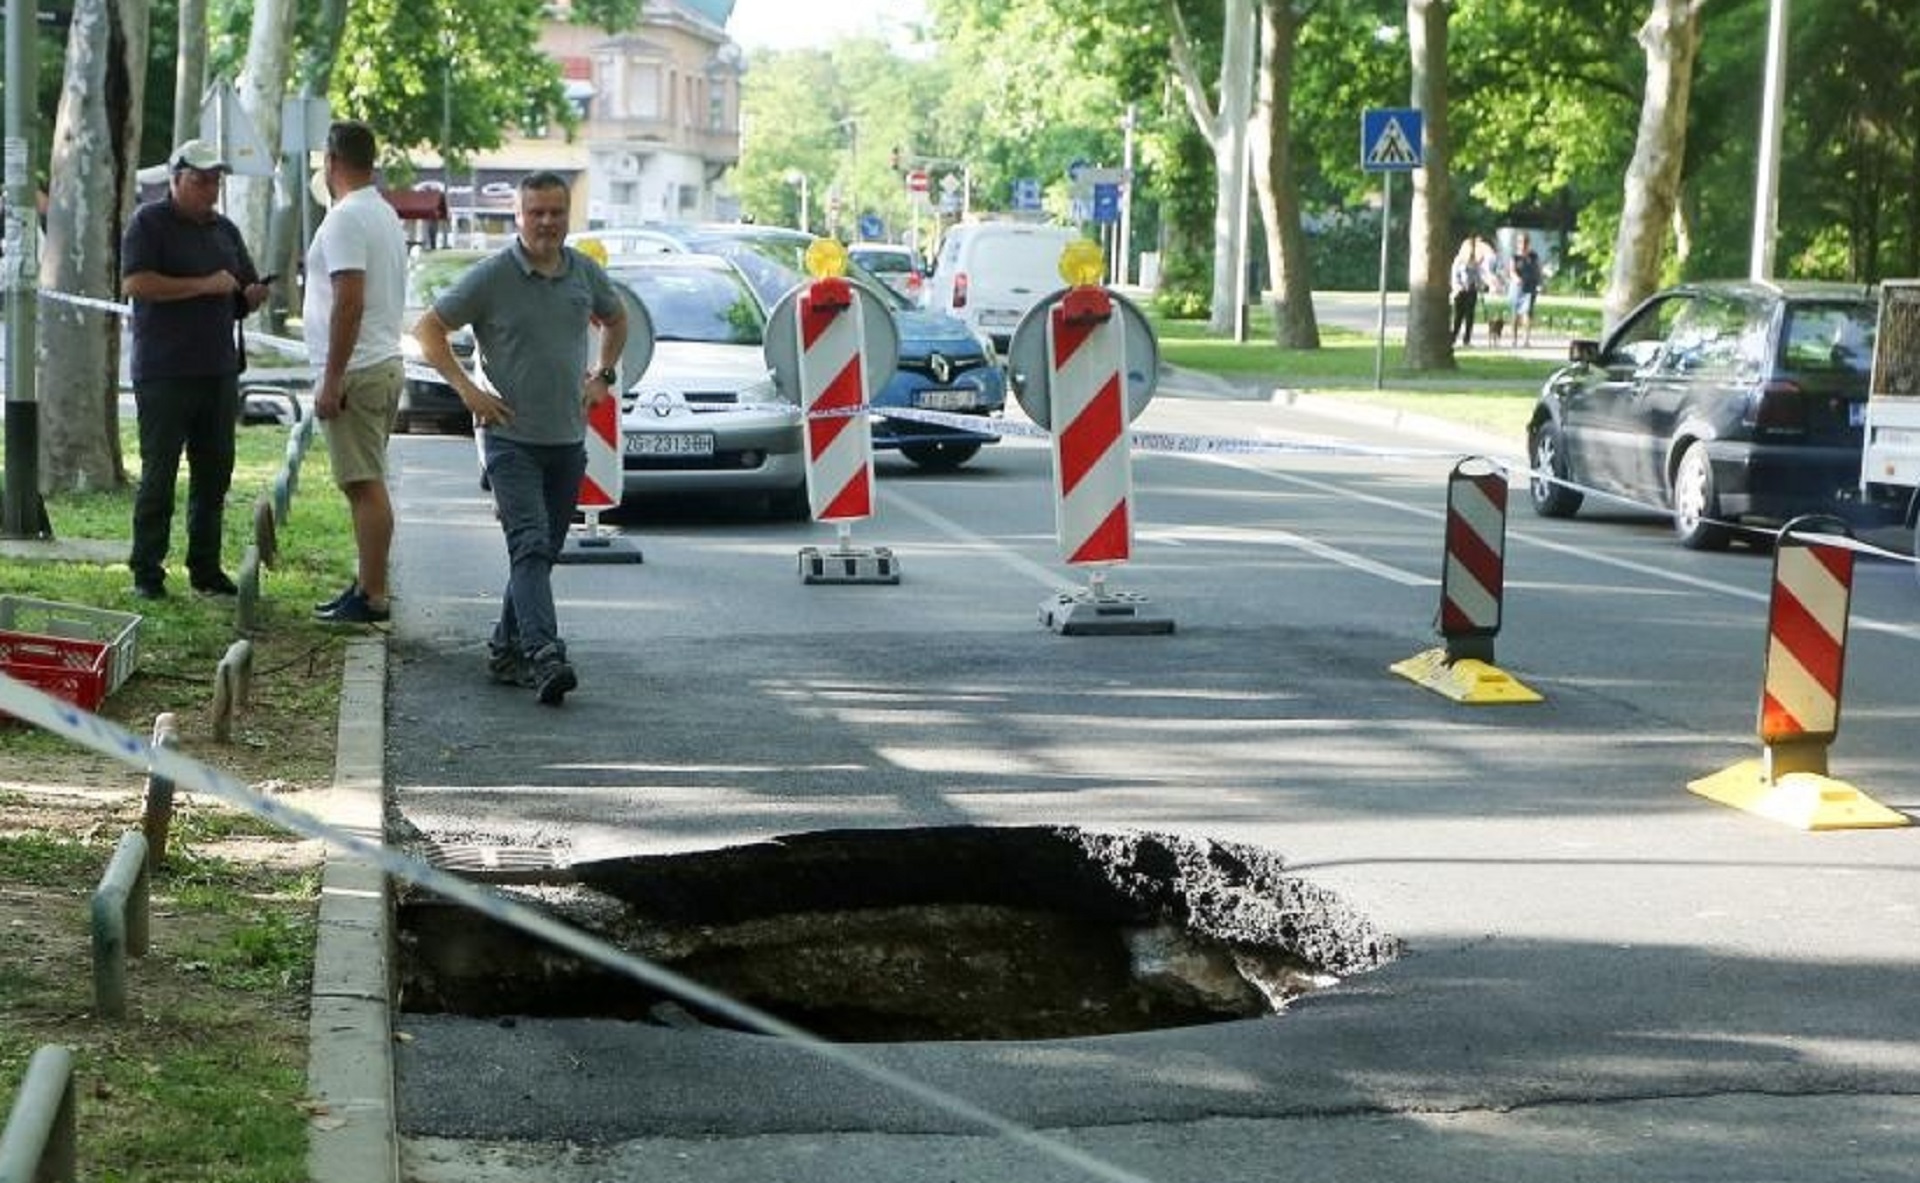 13.06.2020., Zagreb - Na Bukovackoj cesti u Maksimiru otvorila se rupa na cesti dubine veca od 2 metra. Policija je odmah izasla na teren i osigurava mjesto da ne bi doslo do vece tragedije. Photo: Emica Elvedji/PIXSELL